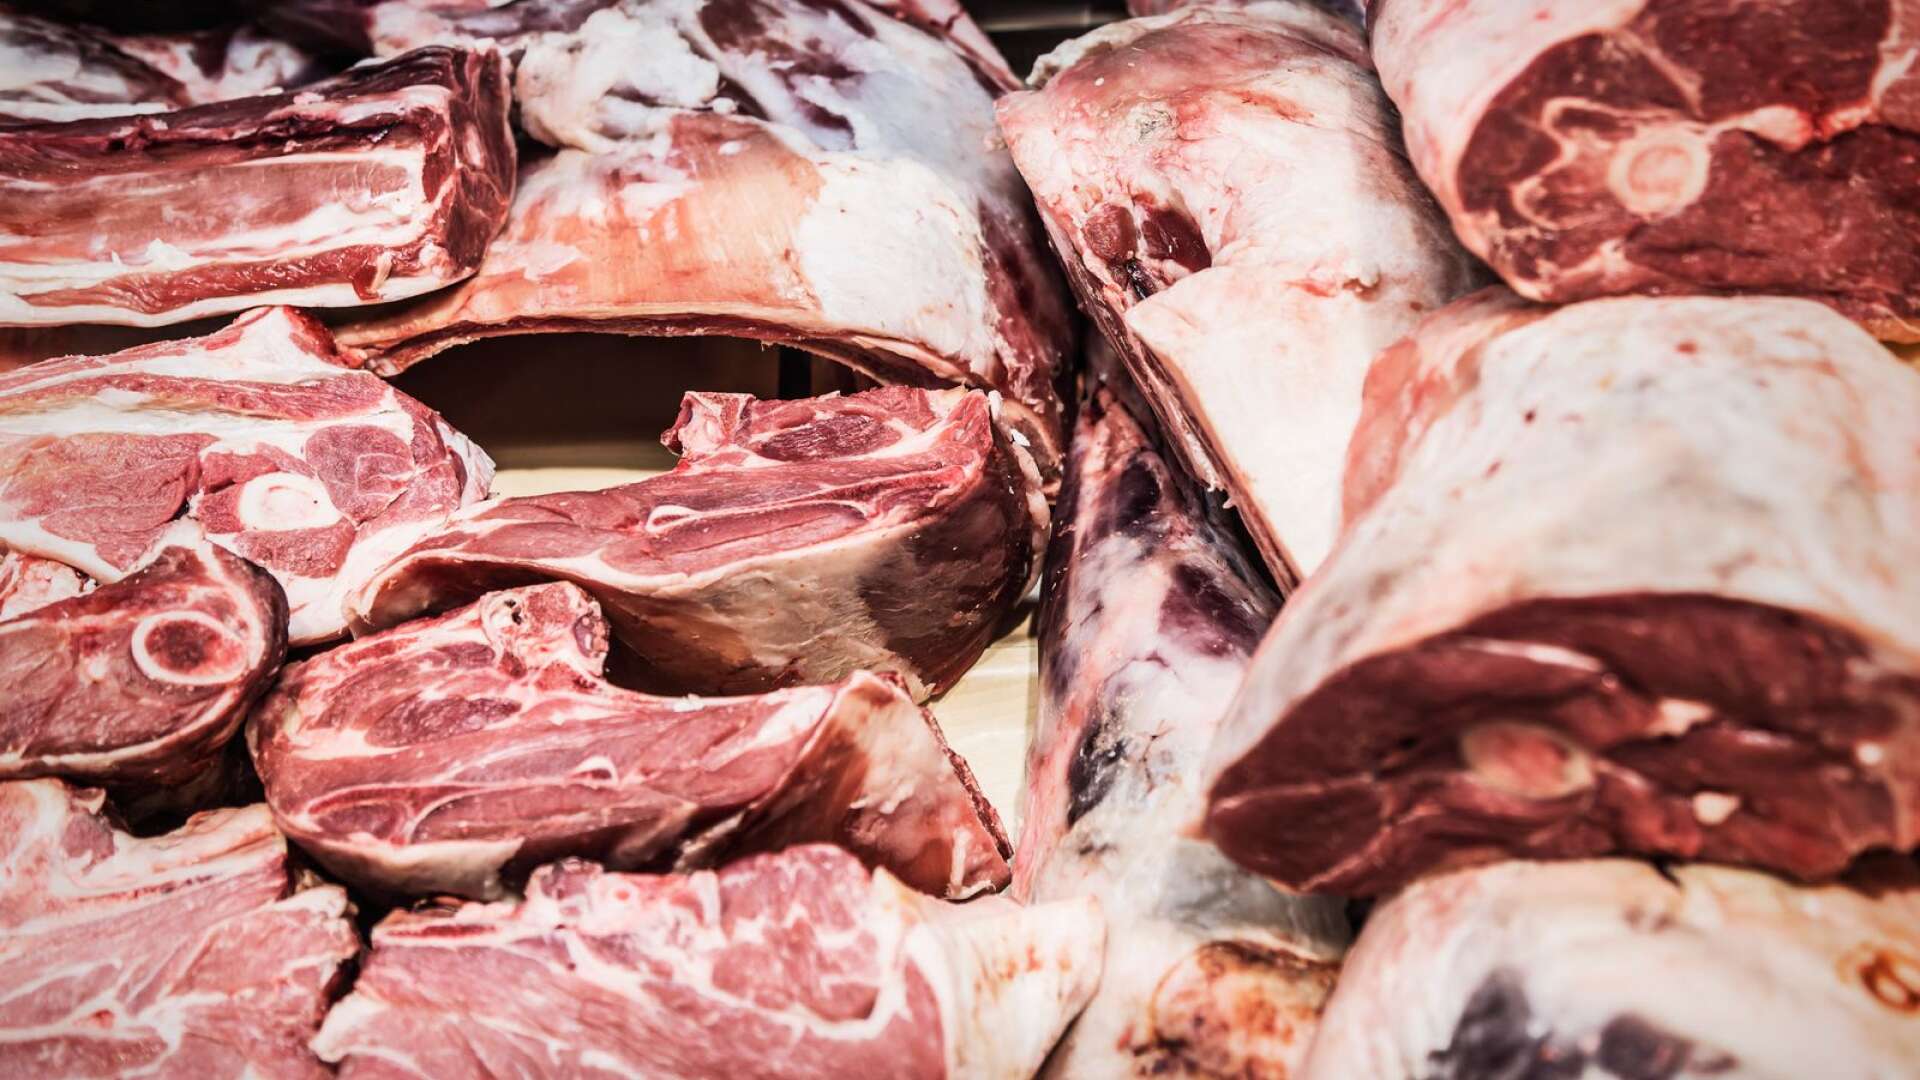 Butiken får inte sälja oförpackad mat, som kött, förrän de hygieniska förhållandena ordnats upp enligt beslut från miljöförvaltningen.